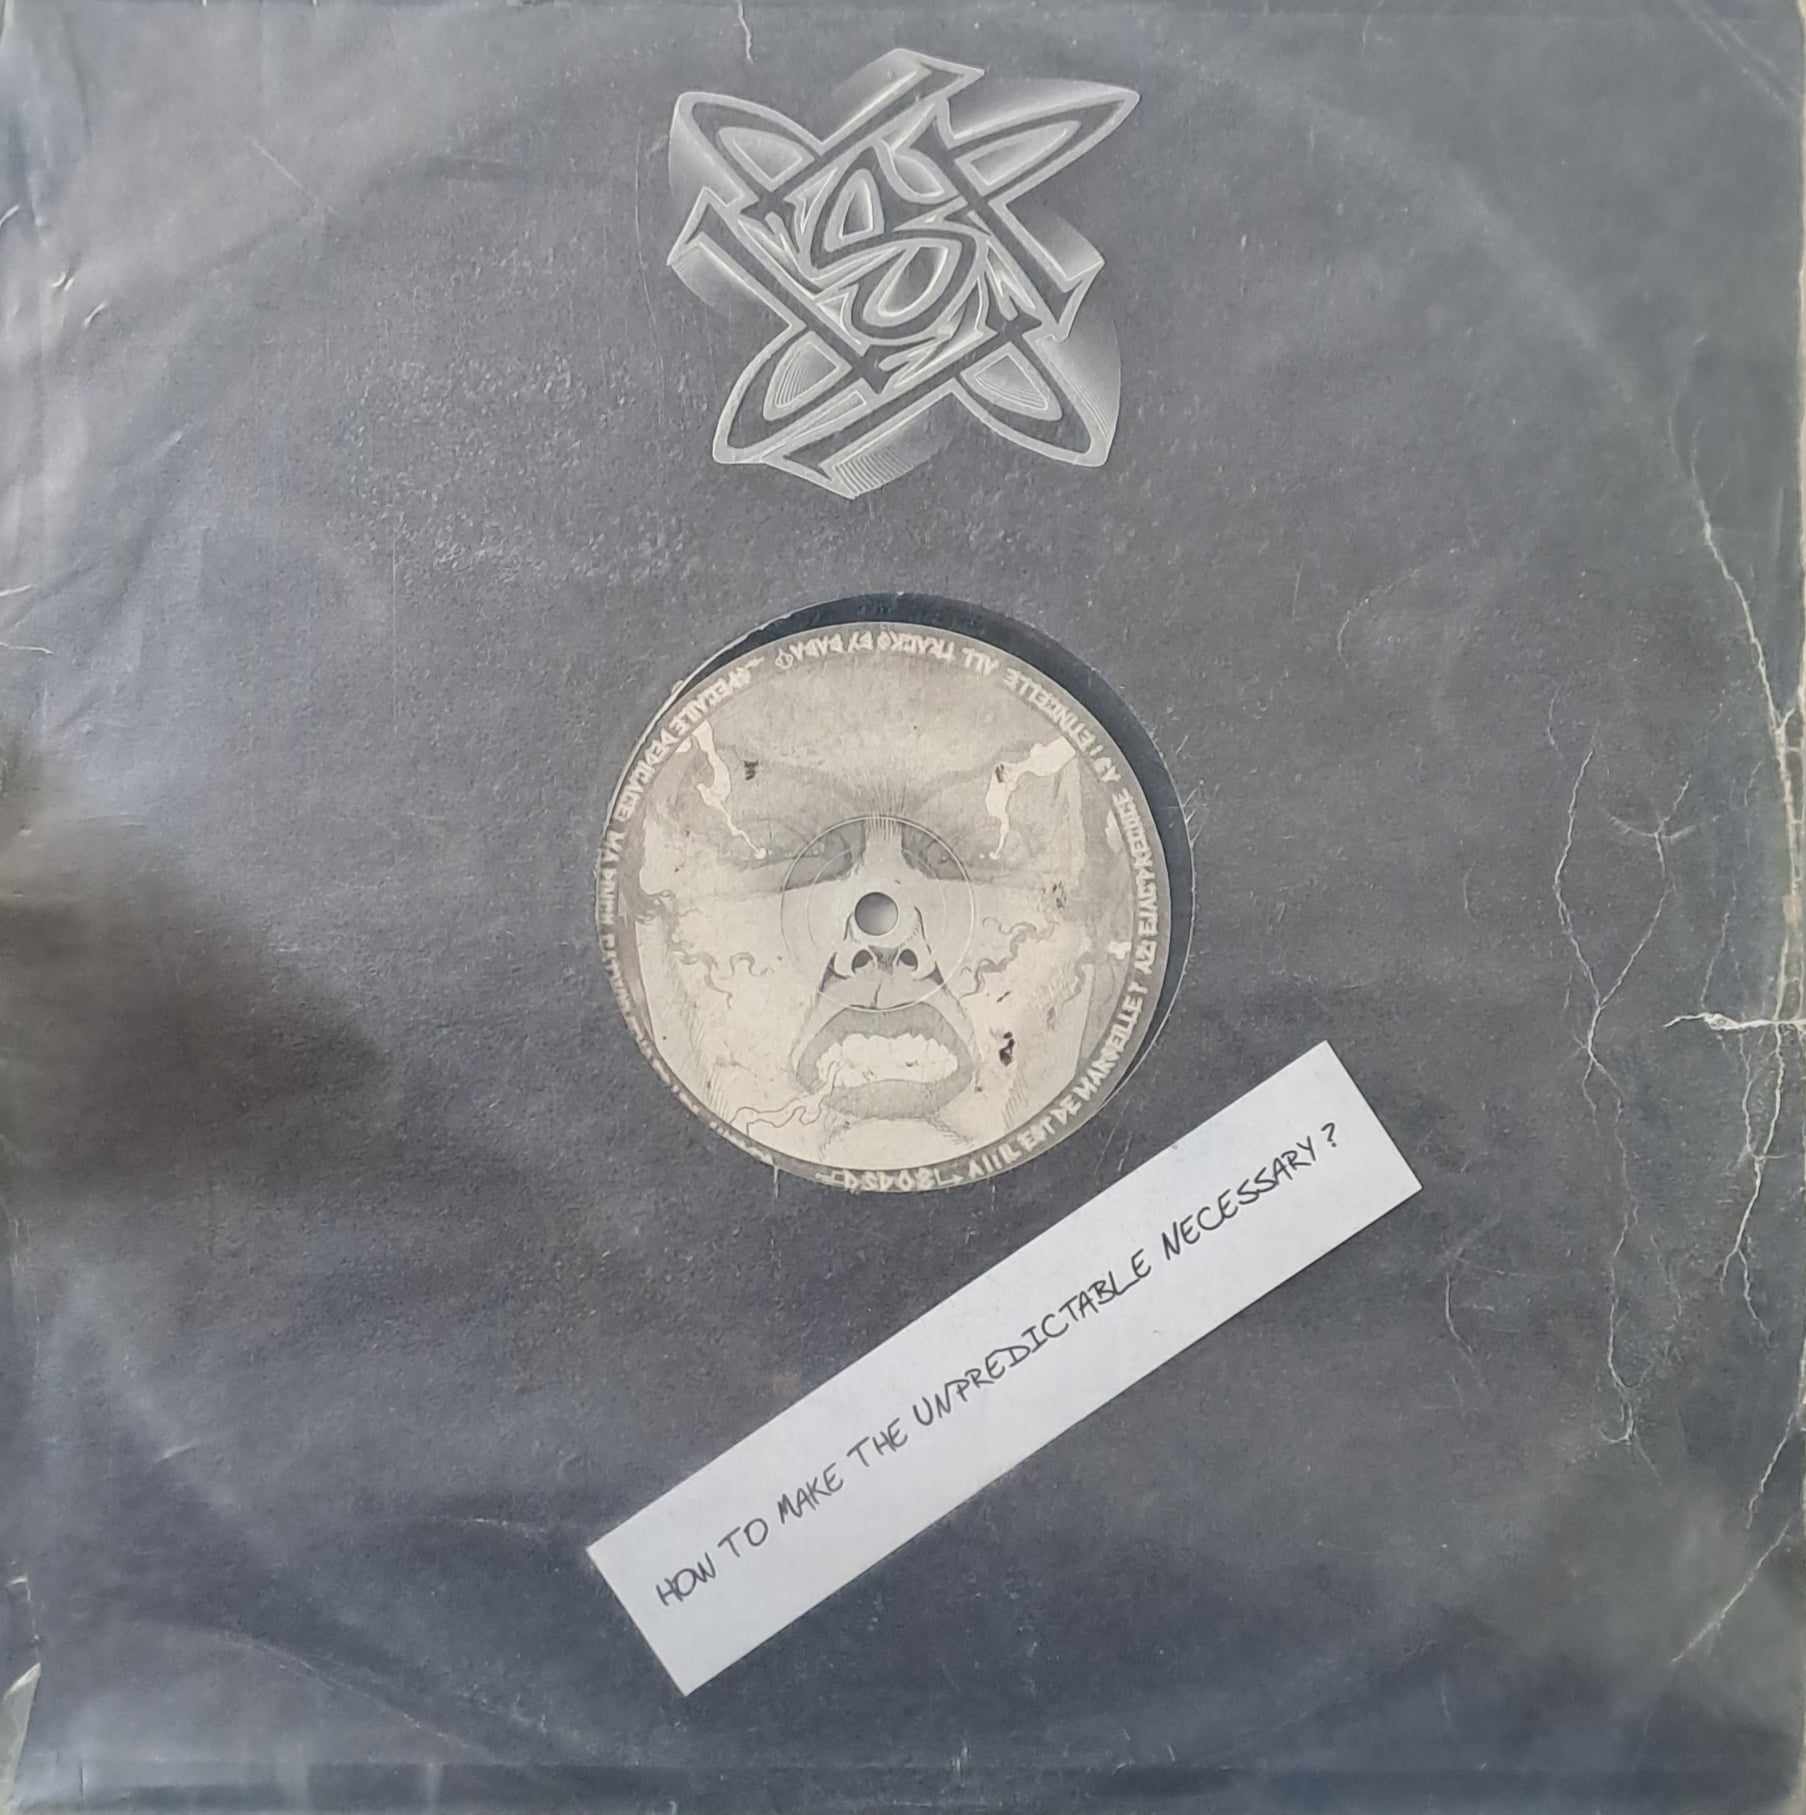 DSP 08 (Original) - vinyle freetekno